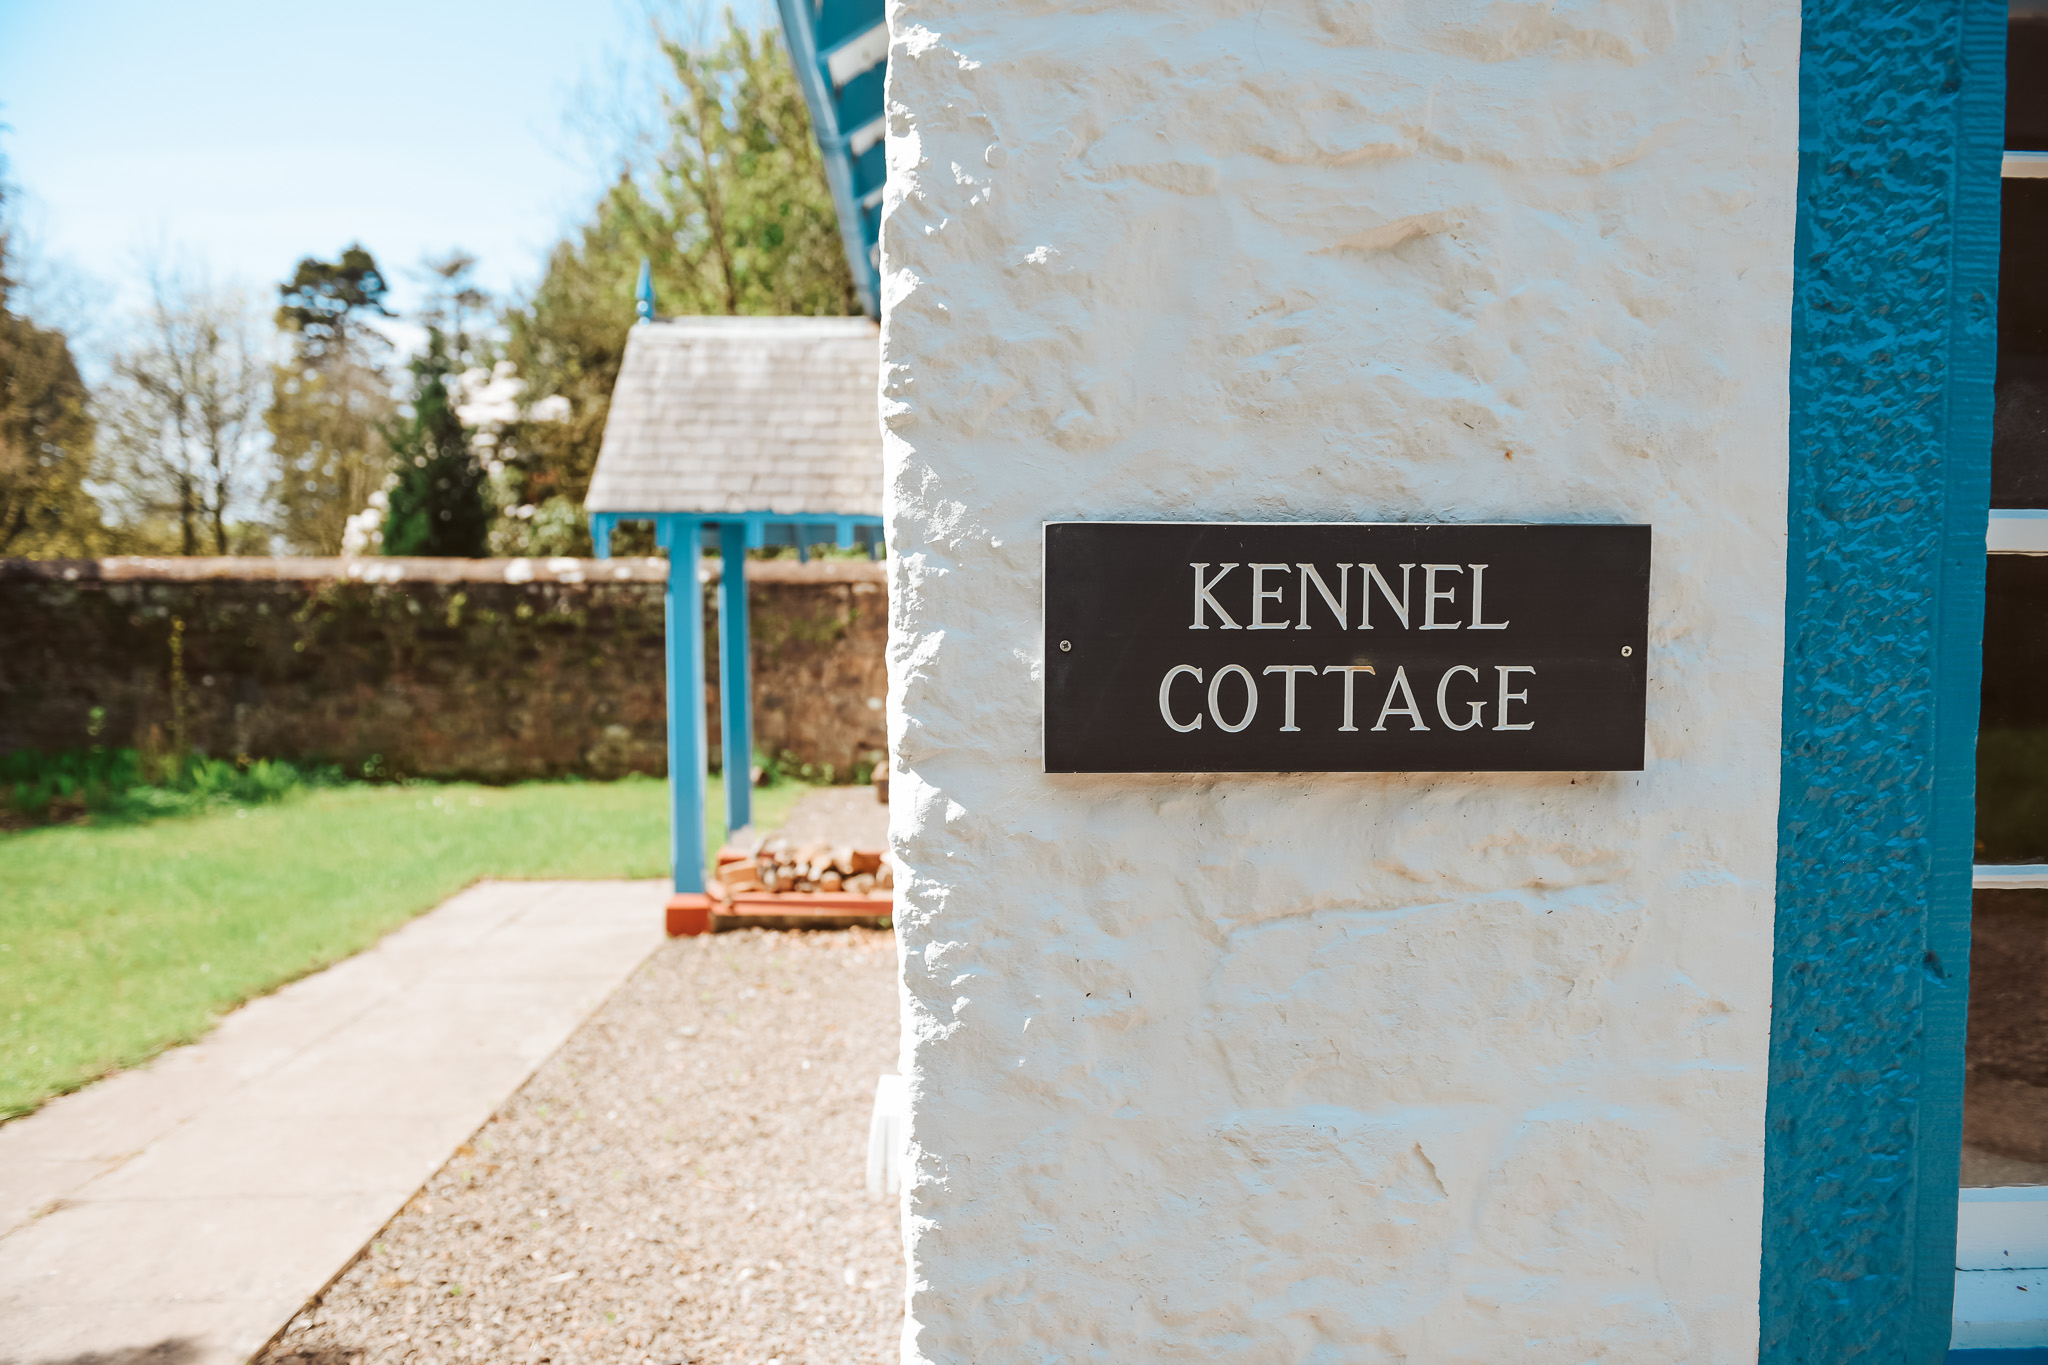 Kennel cottage